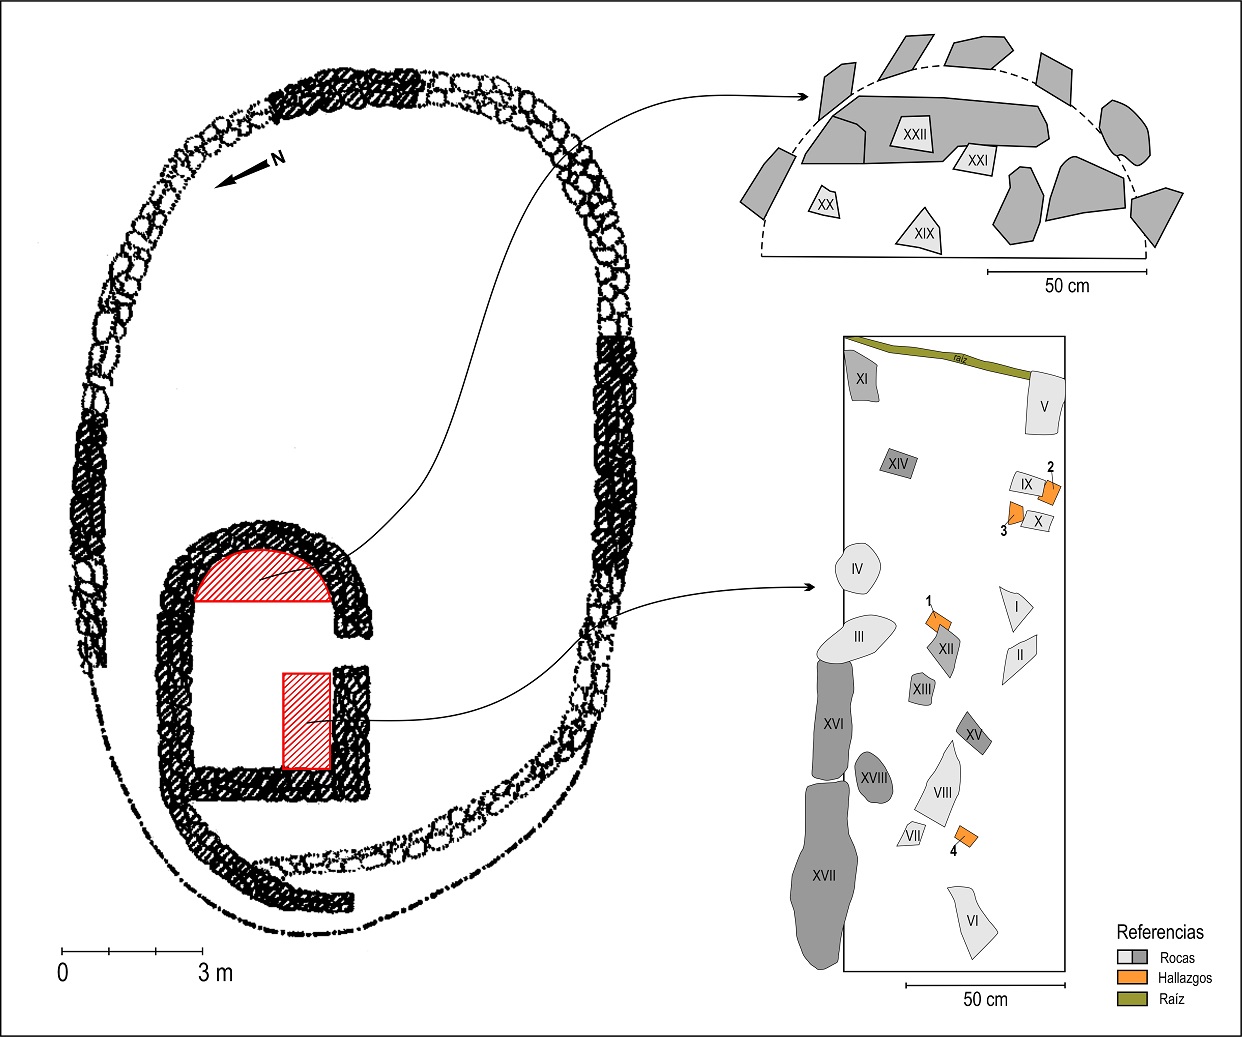 Plano de planta de la estructura y detalle de las áreas excavadas.